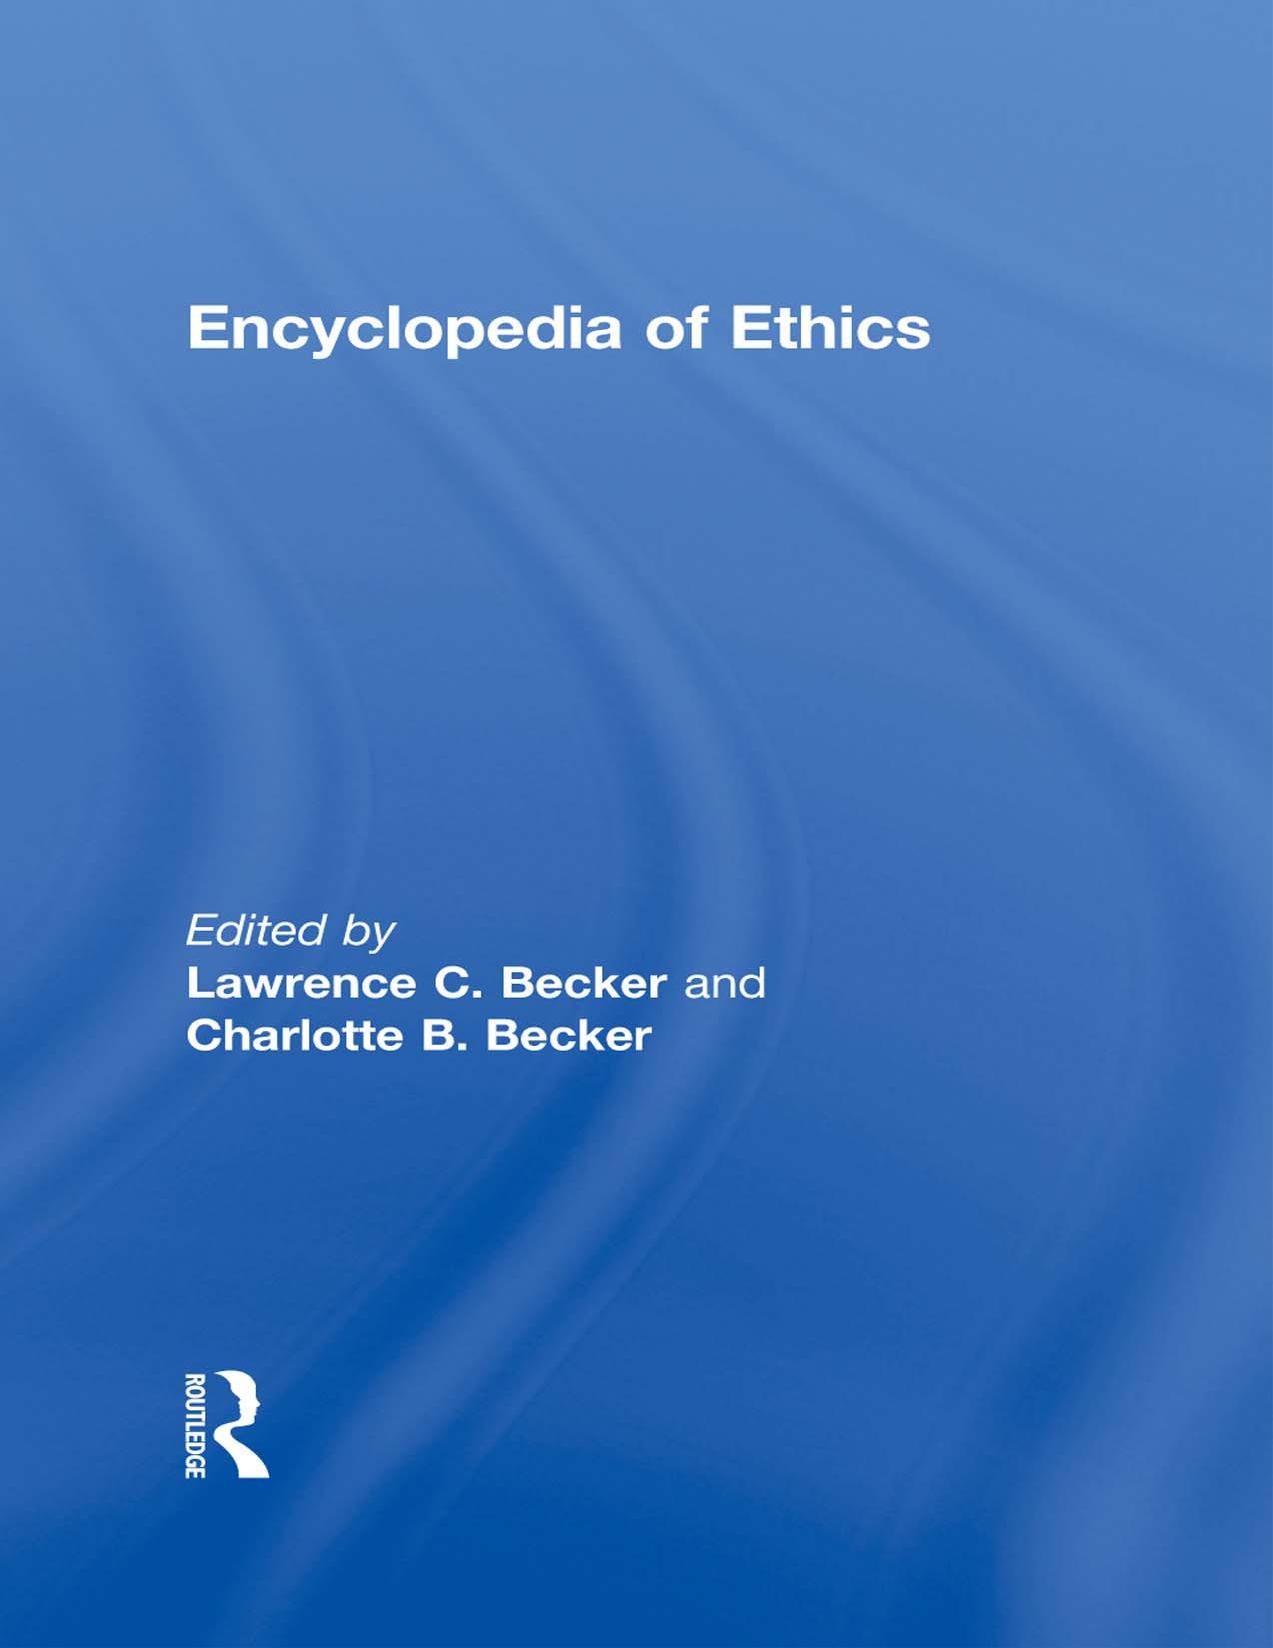 Encyclopedia of Ethics